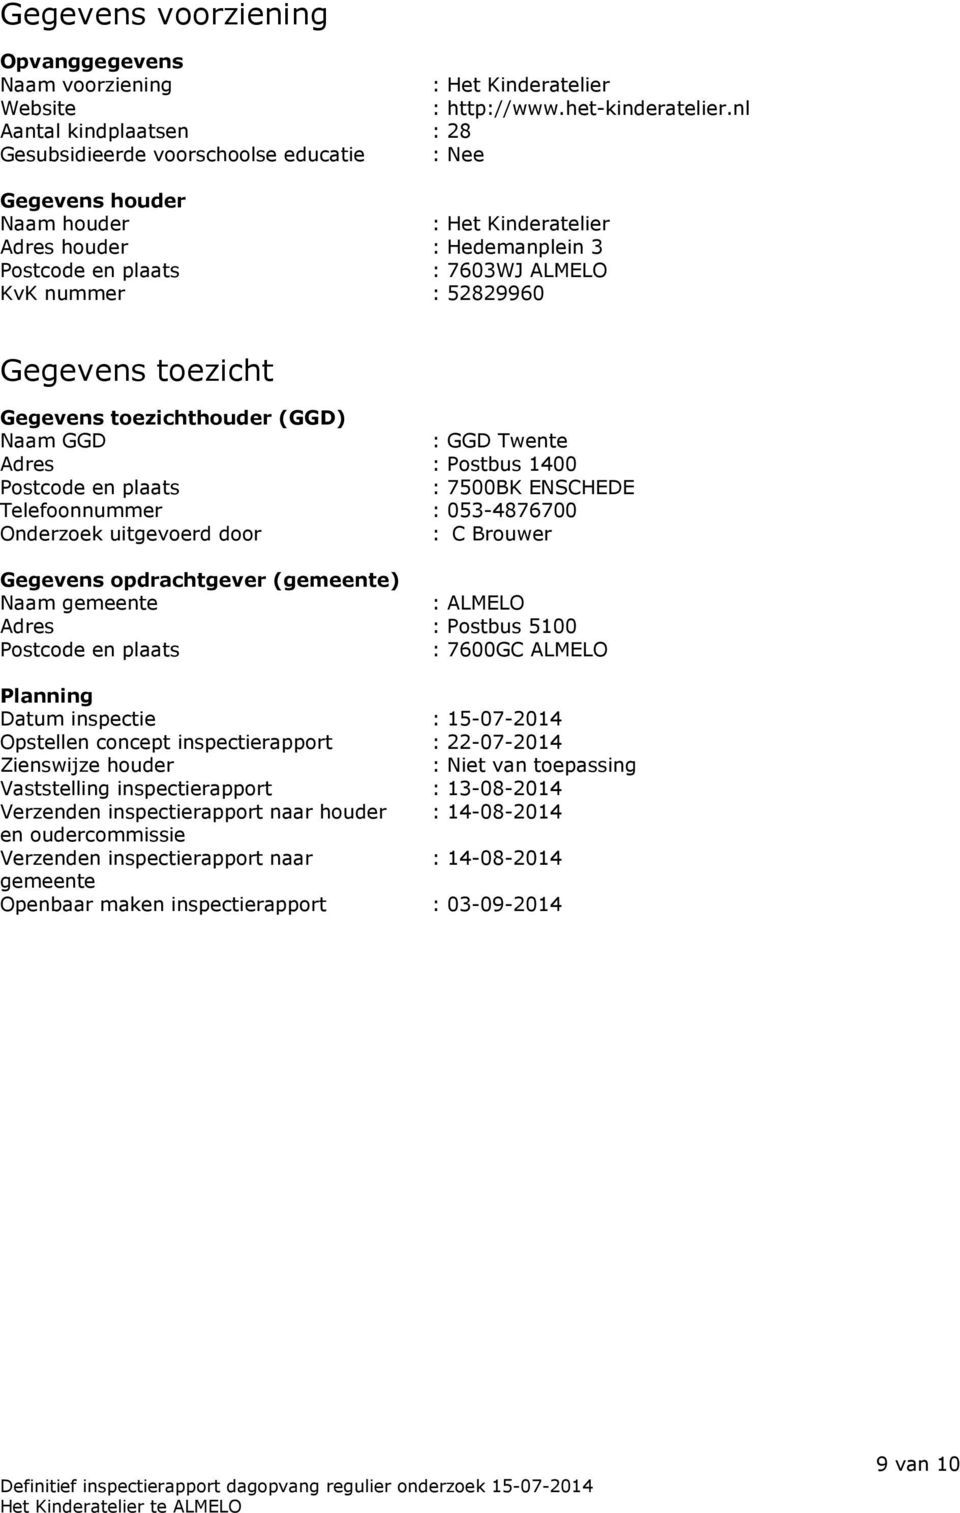 52829960 Gegevens toezicht Gegevens toezichthouder (GGD) Naam GGD : GGD Twente Adres : Postbus 1400 Postcode en plaats : 7500BK ENSCHEDE Telefoonnummer : 053-4876700 Onderzoek uitgevoerd door : C